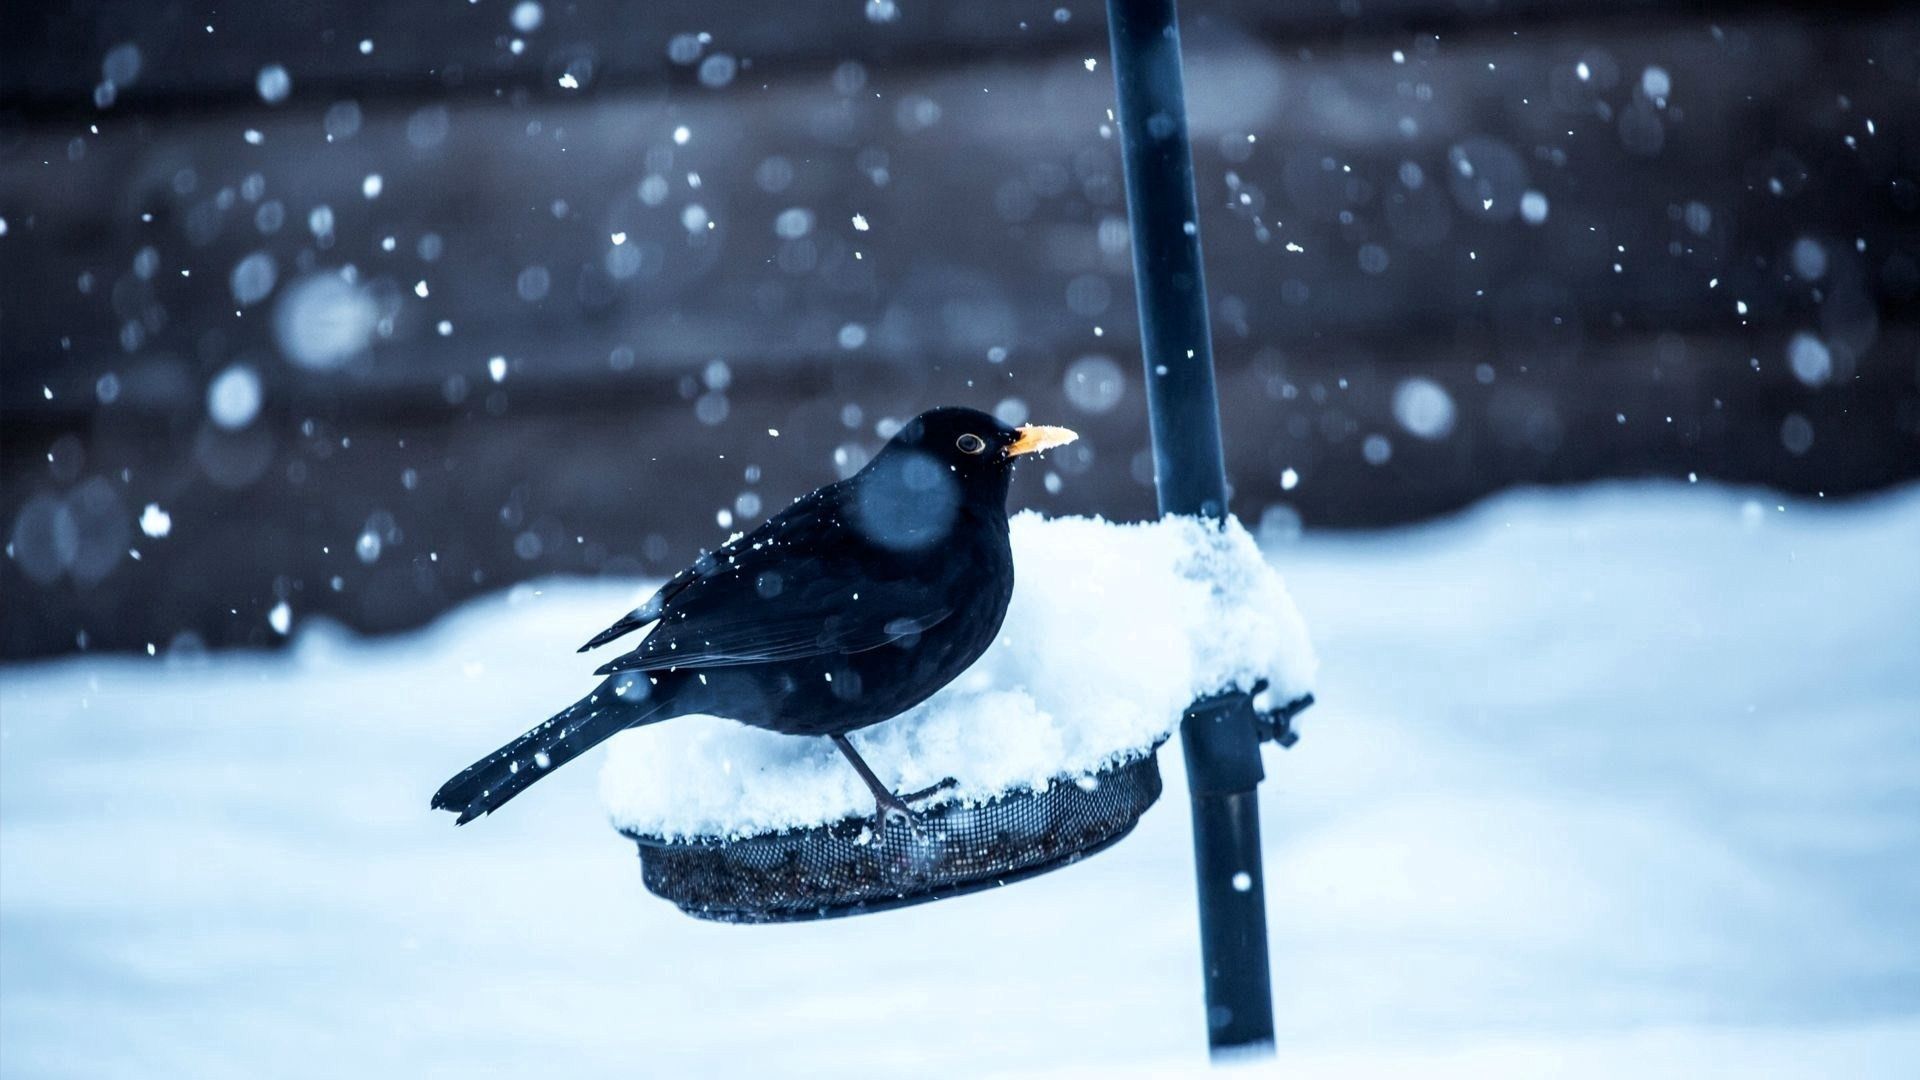 Скачать обои бесплатно Животные, Снег, Птица, Зима, Ворона картинка на рабочий стол ПК